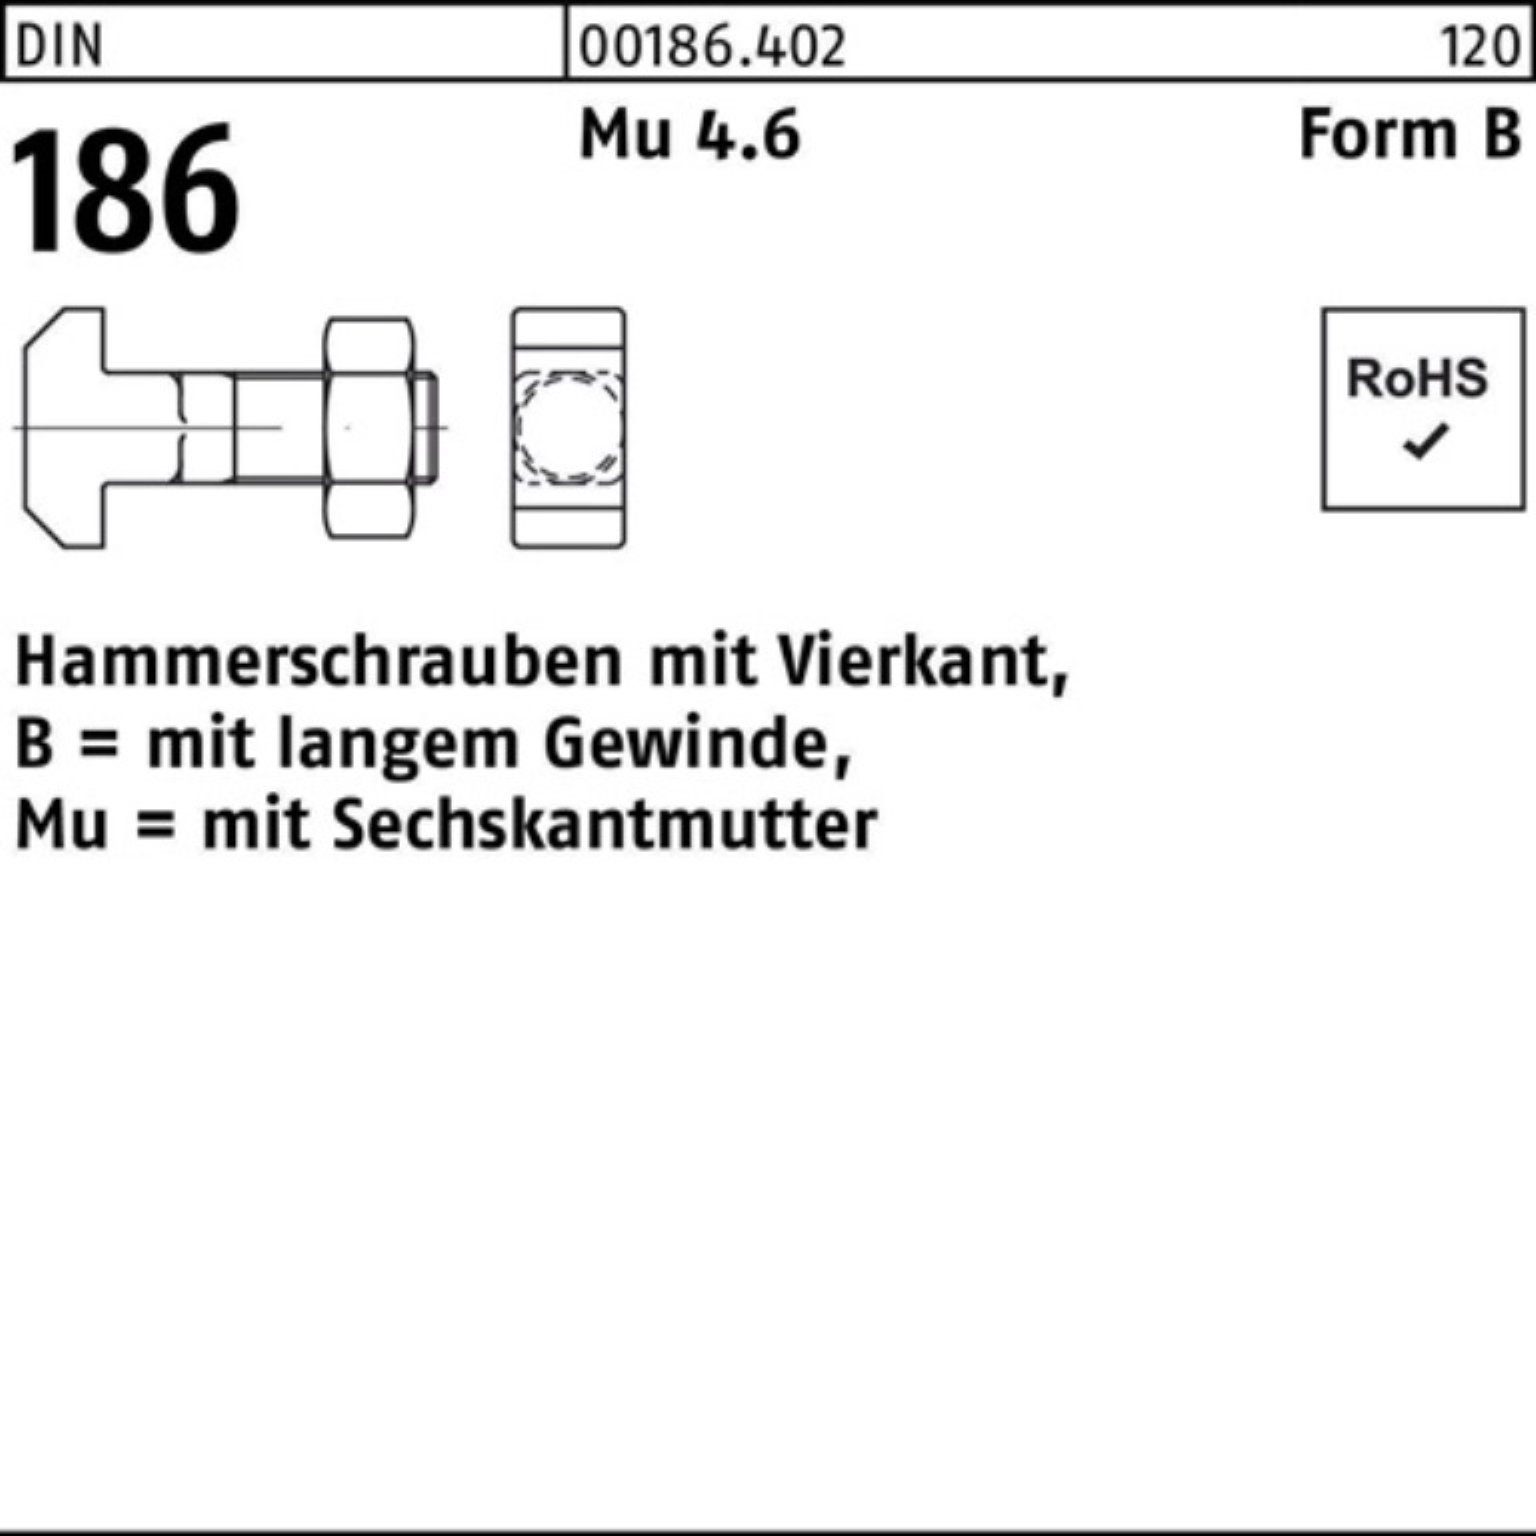 6-ktmutter Hammerschraube Vierkant 24x 100er 186 DIN BM Pack 120 FormB Schraube Reyher